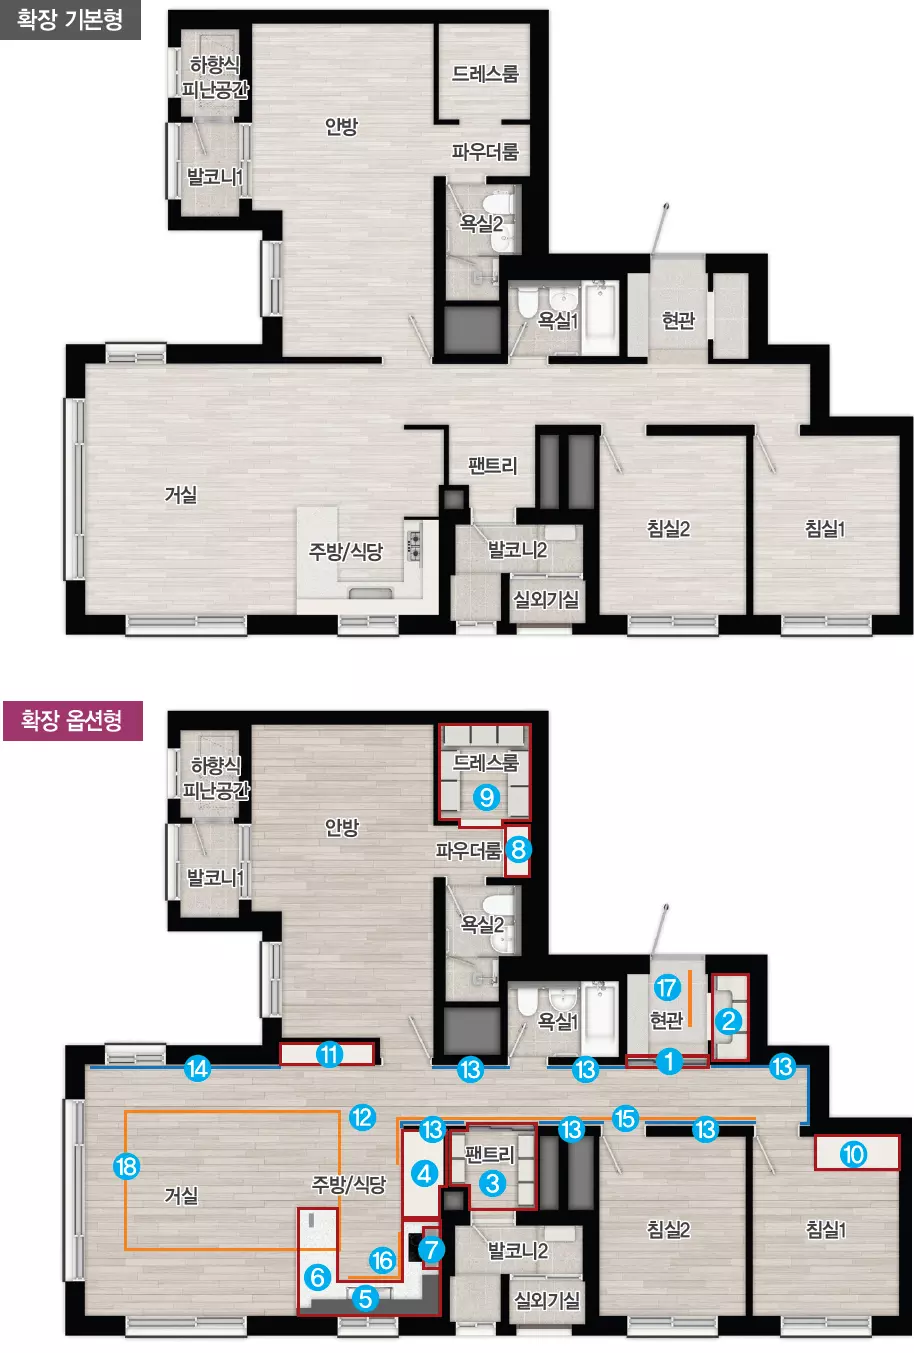 인천 검단신도시 AB20-2블록 중흥S-클래스 에듀파크 아파트-주택형안내-84B